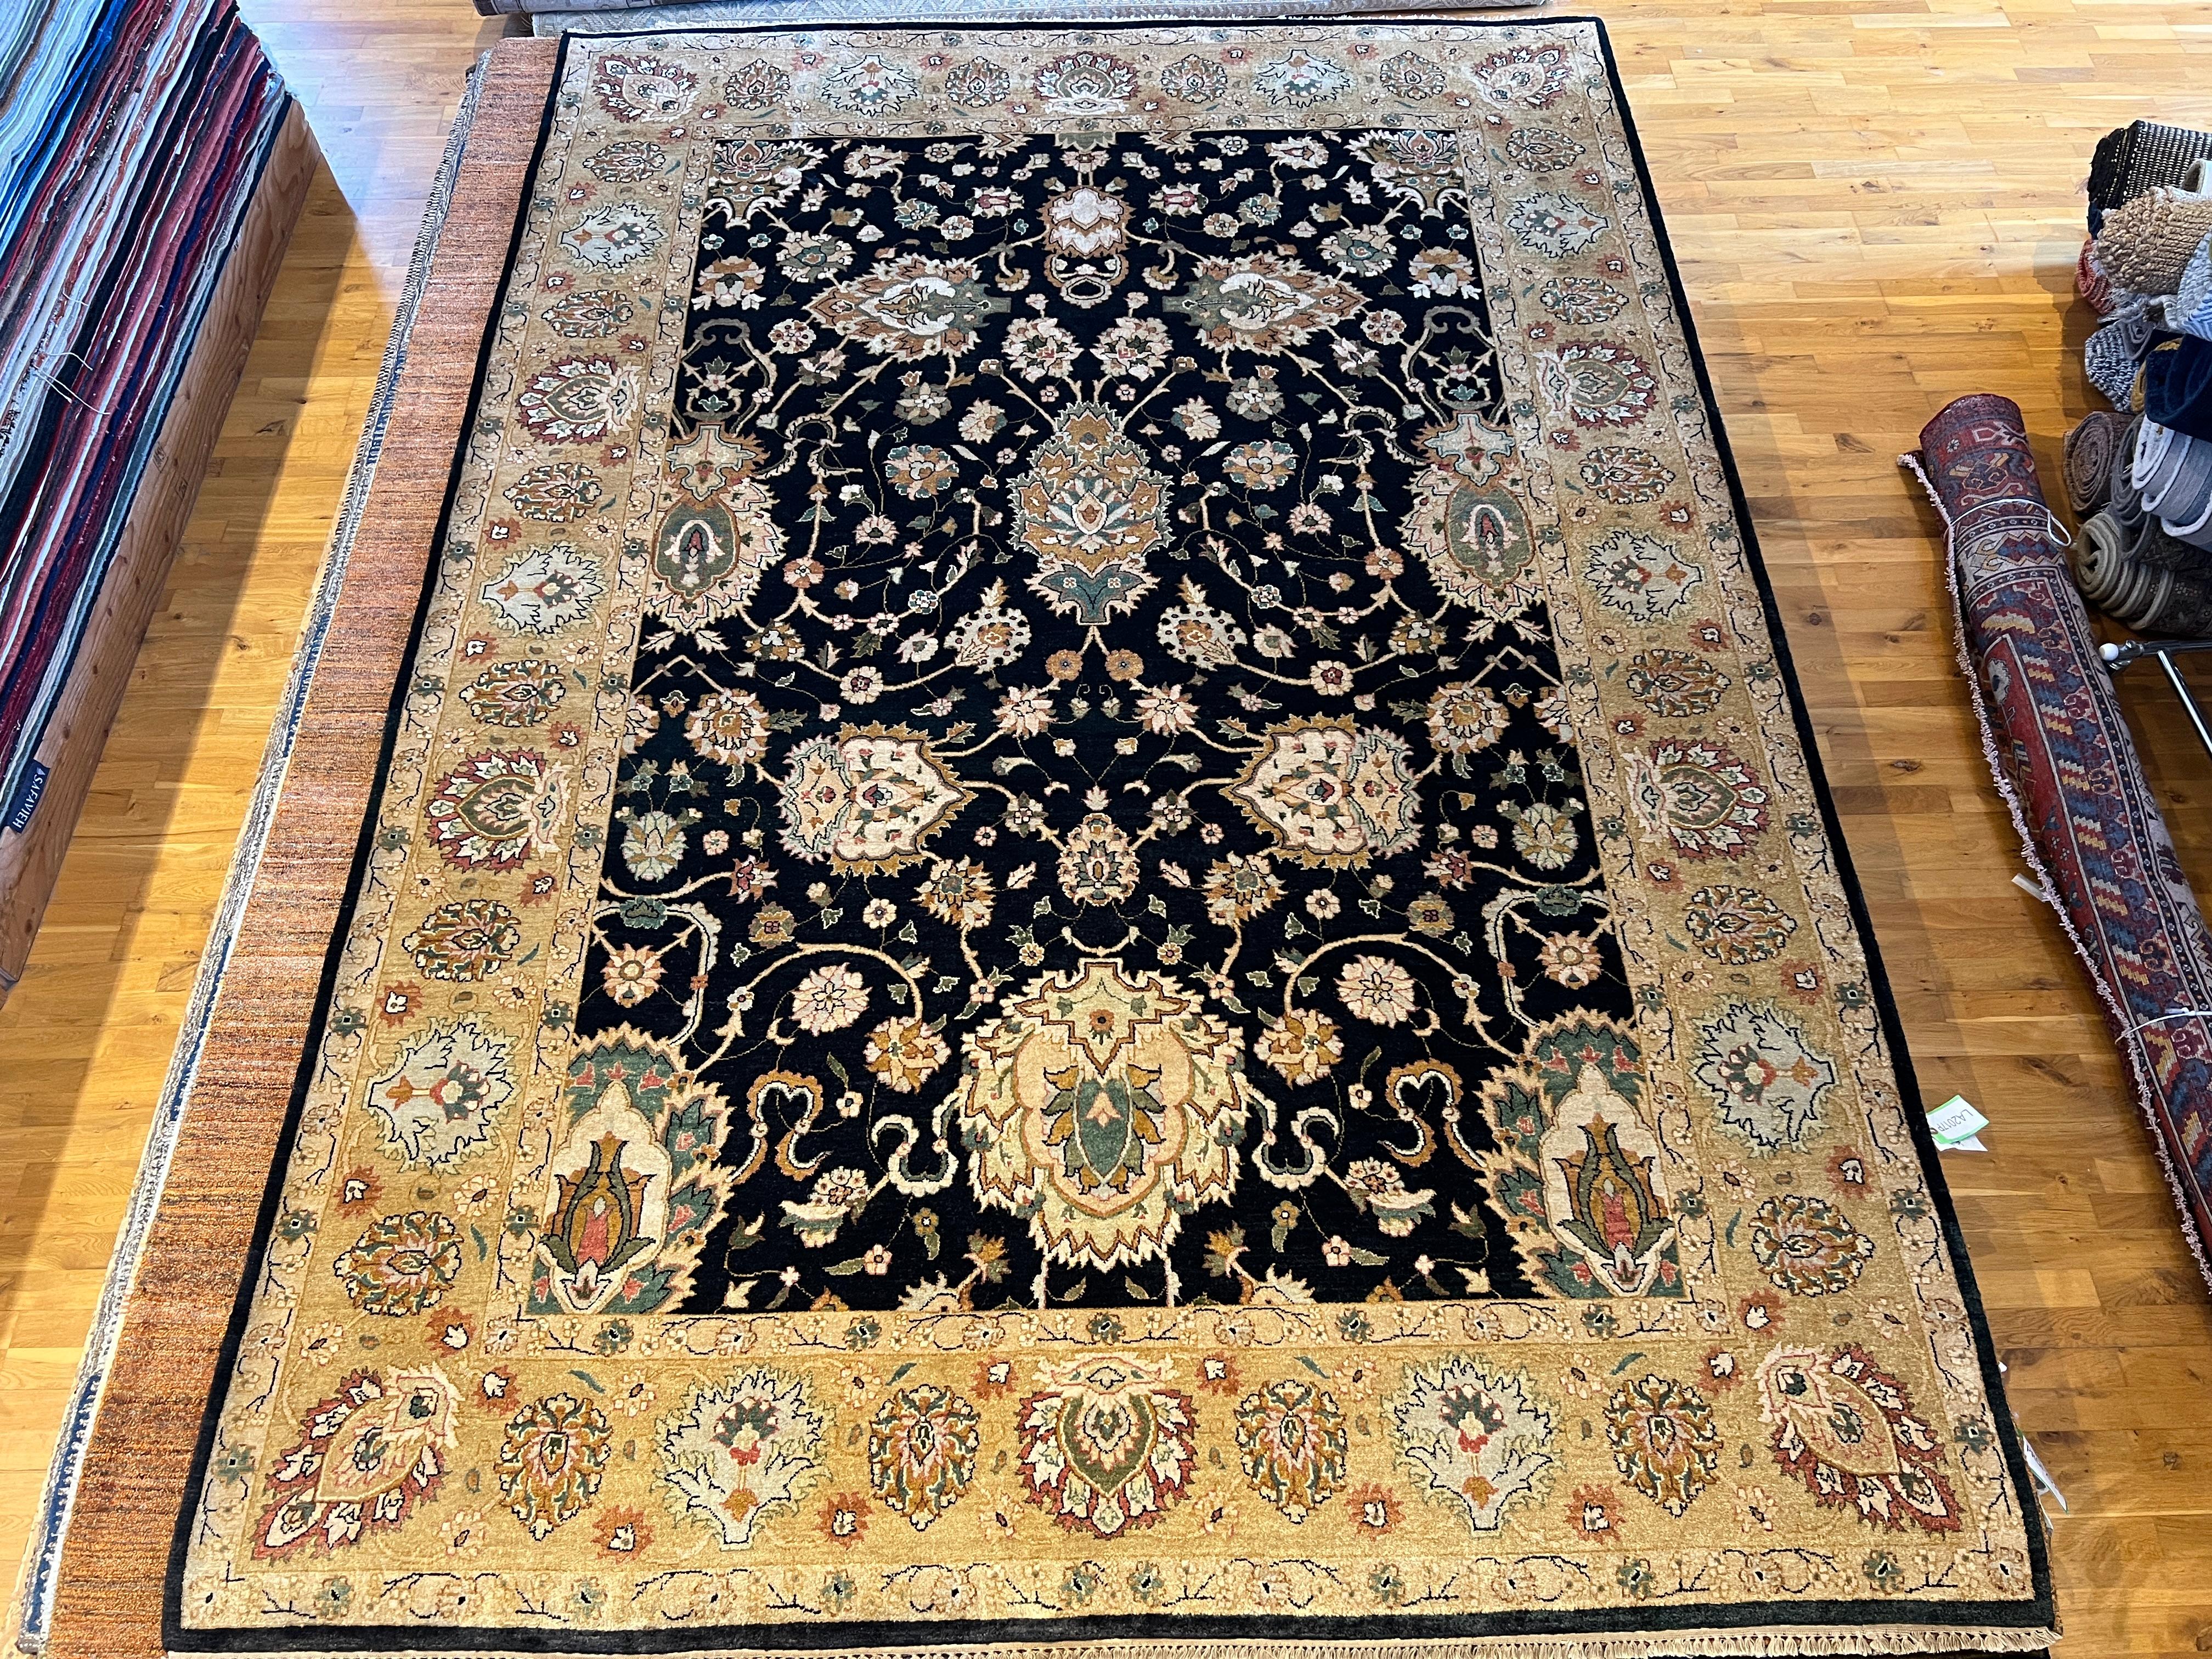 Voici notre magnifique tapis persan 9'x12', noué à la main en Inde avec de la laine et des teintures naturelles. Doté d'un champ noir modernisé et d'une bordure ivoire, ce tapis ajoutera une touche d'élégance et de sophistication à n'importe quelle